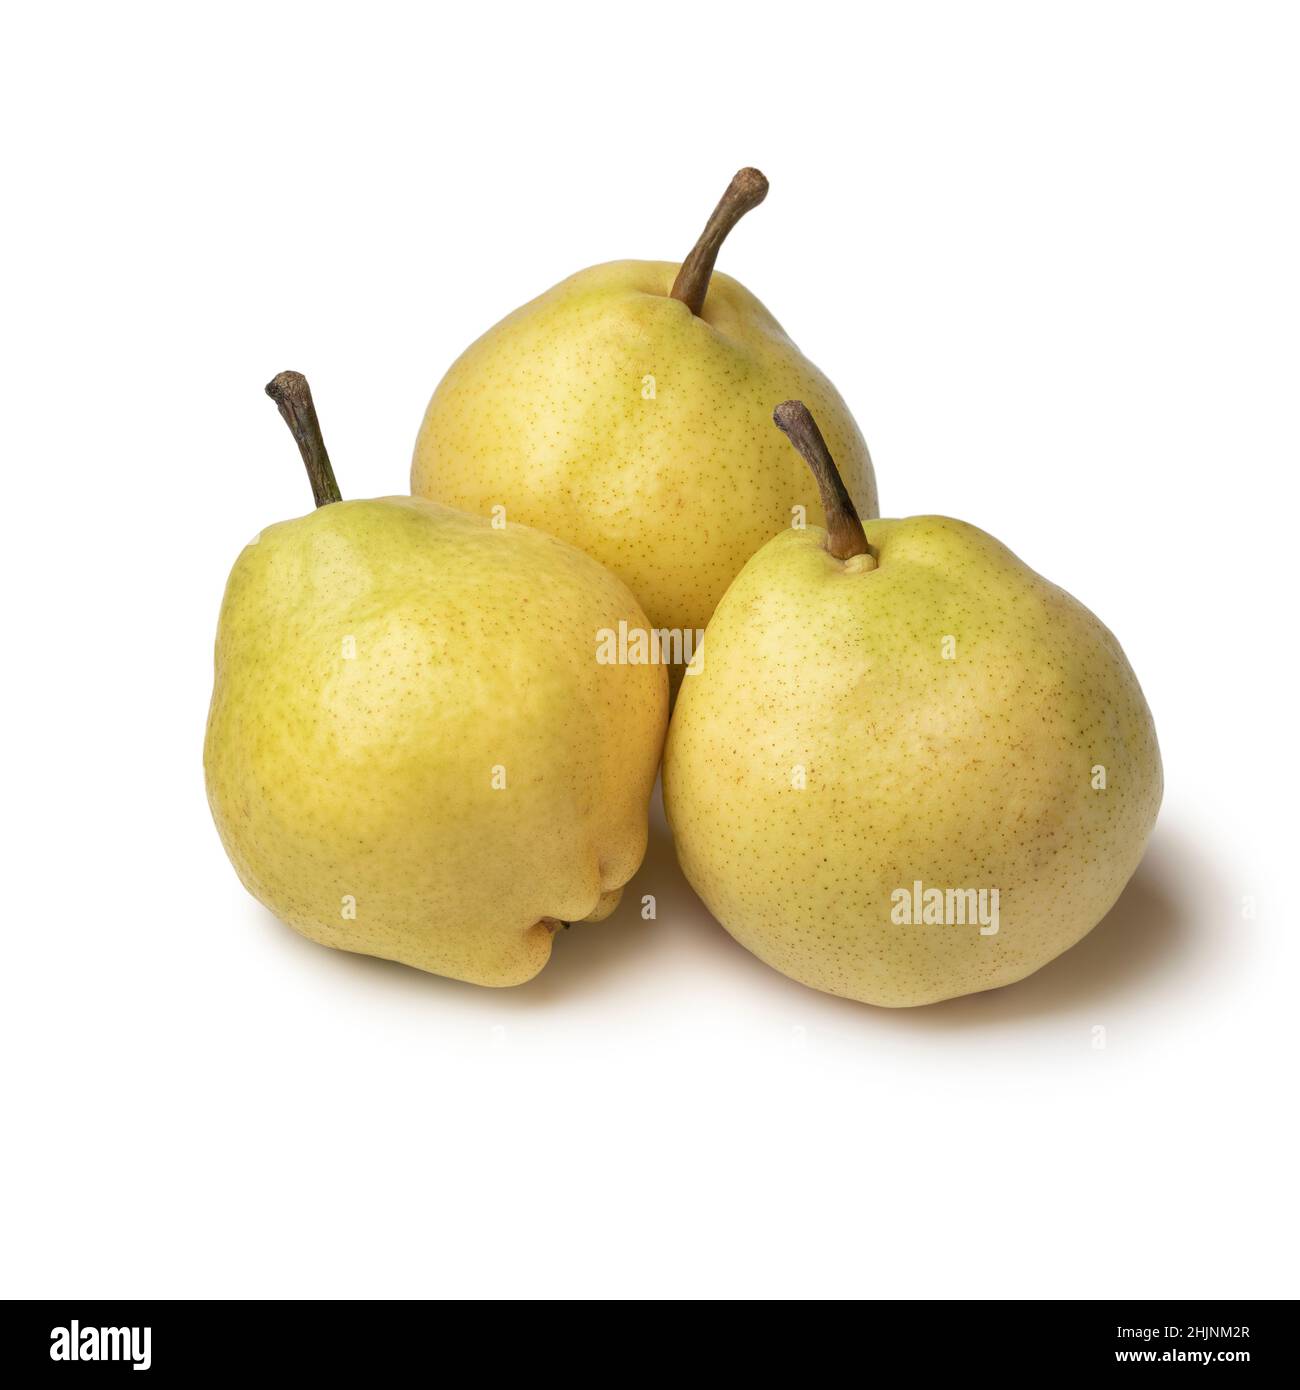 Three fresh ripe tasty Doyenne du Comice pears isolated on white background Stock Photo